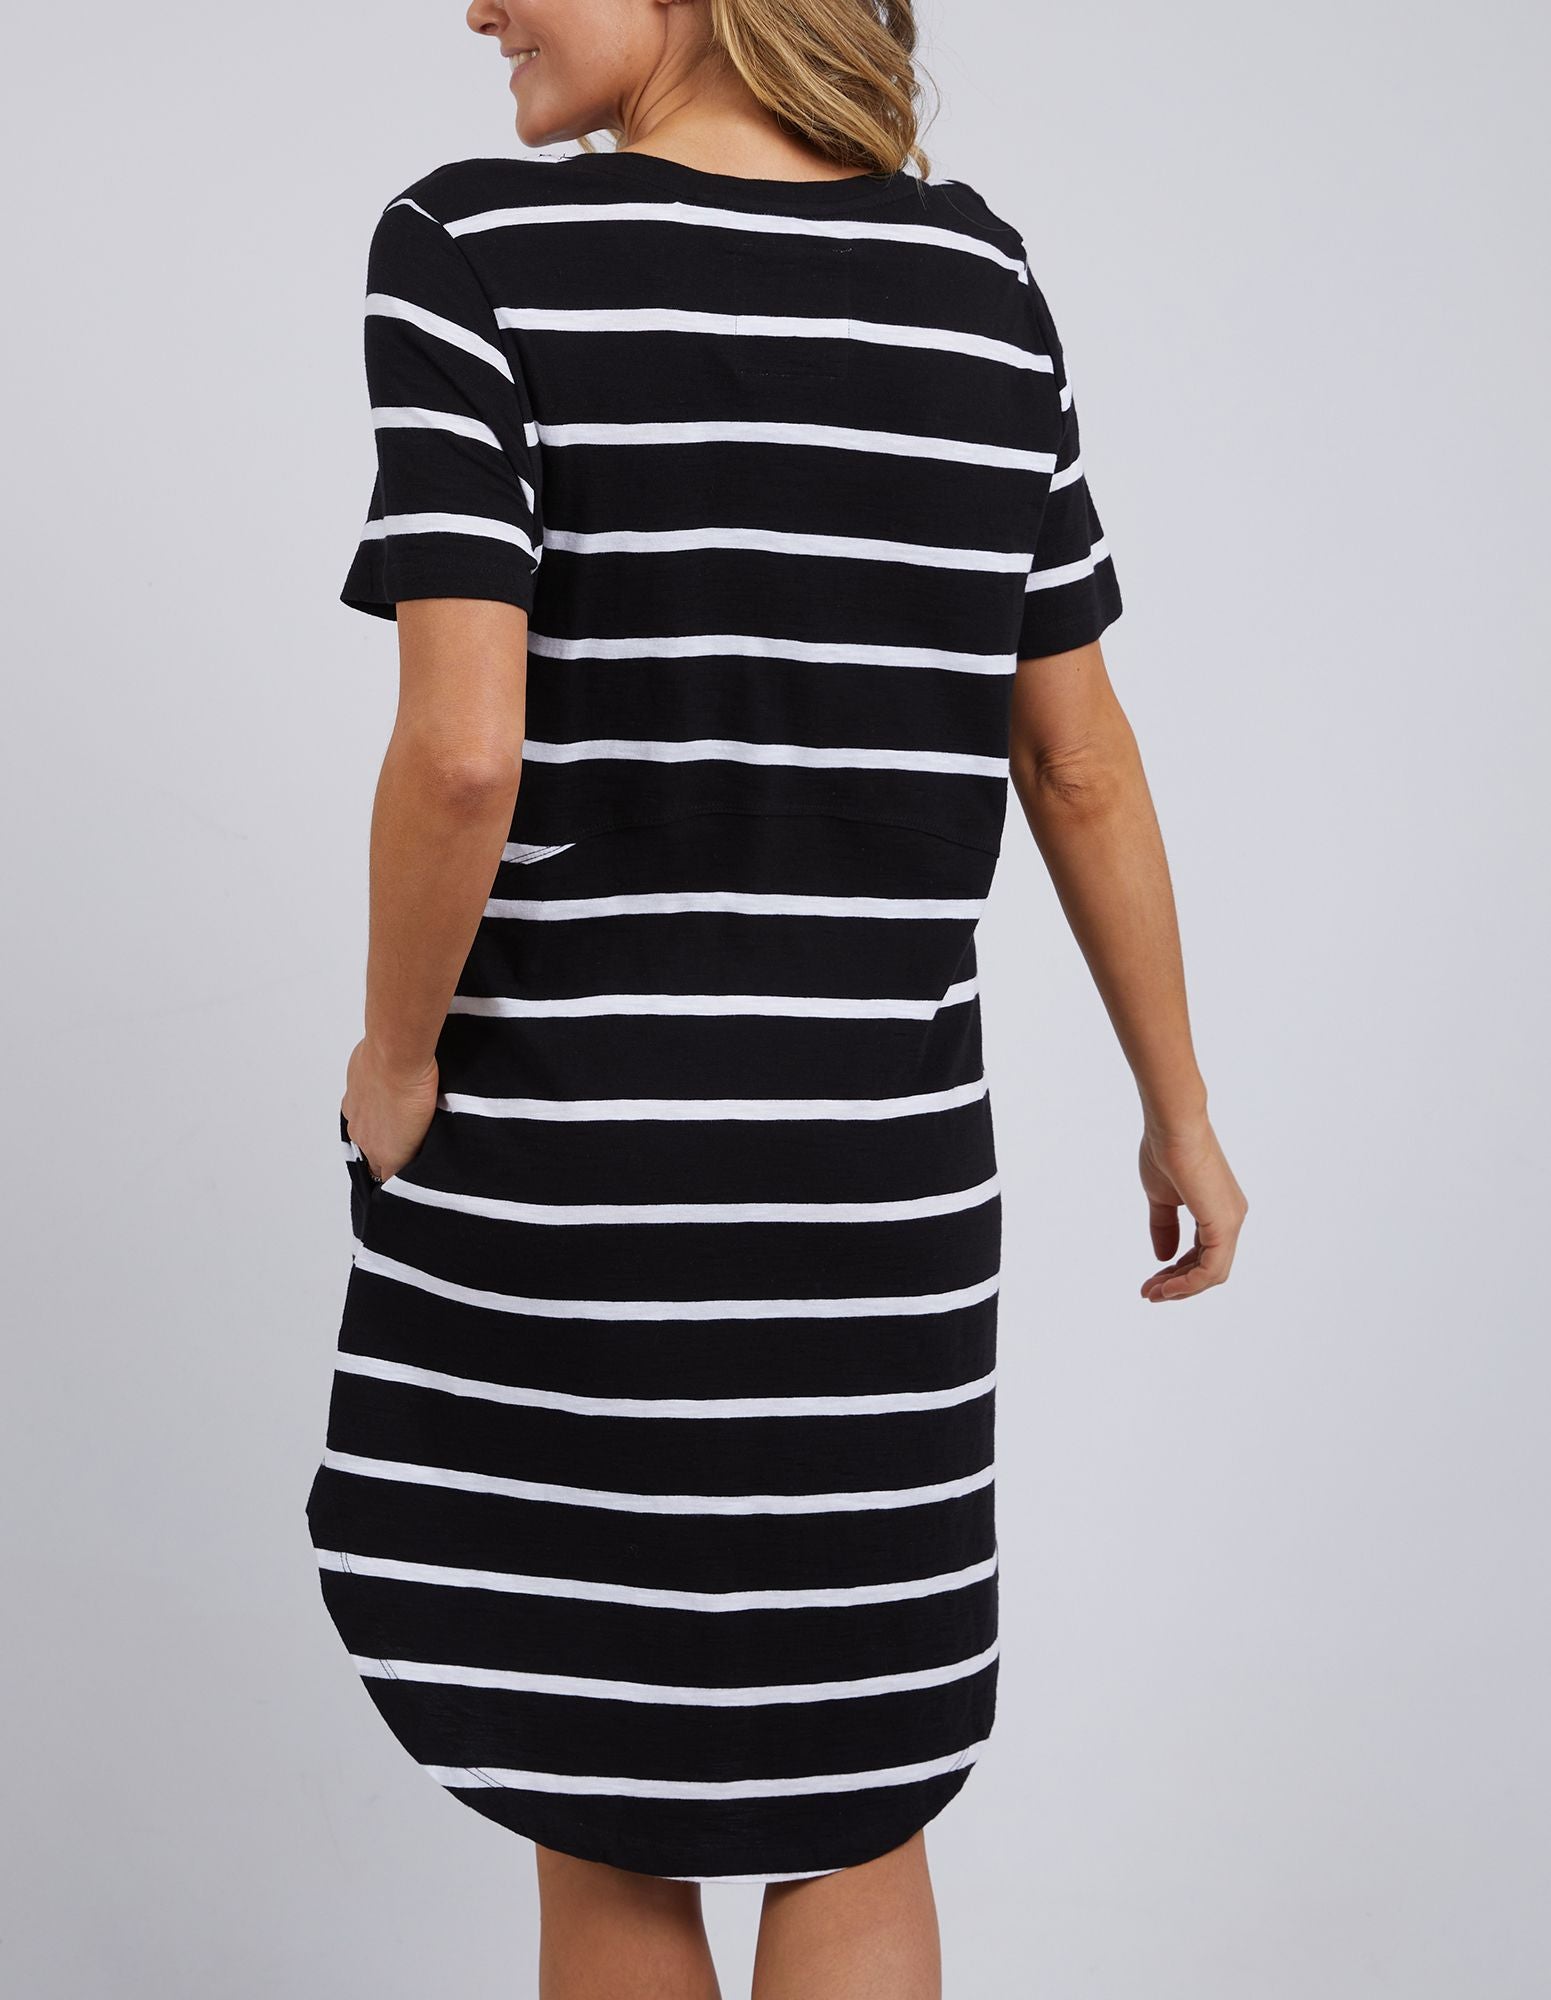 Foxwood Bay Stripe Dress